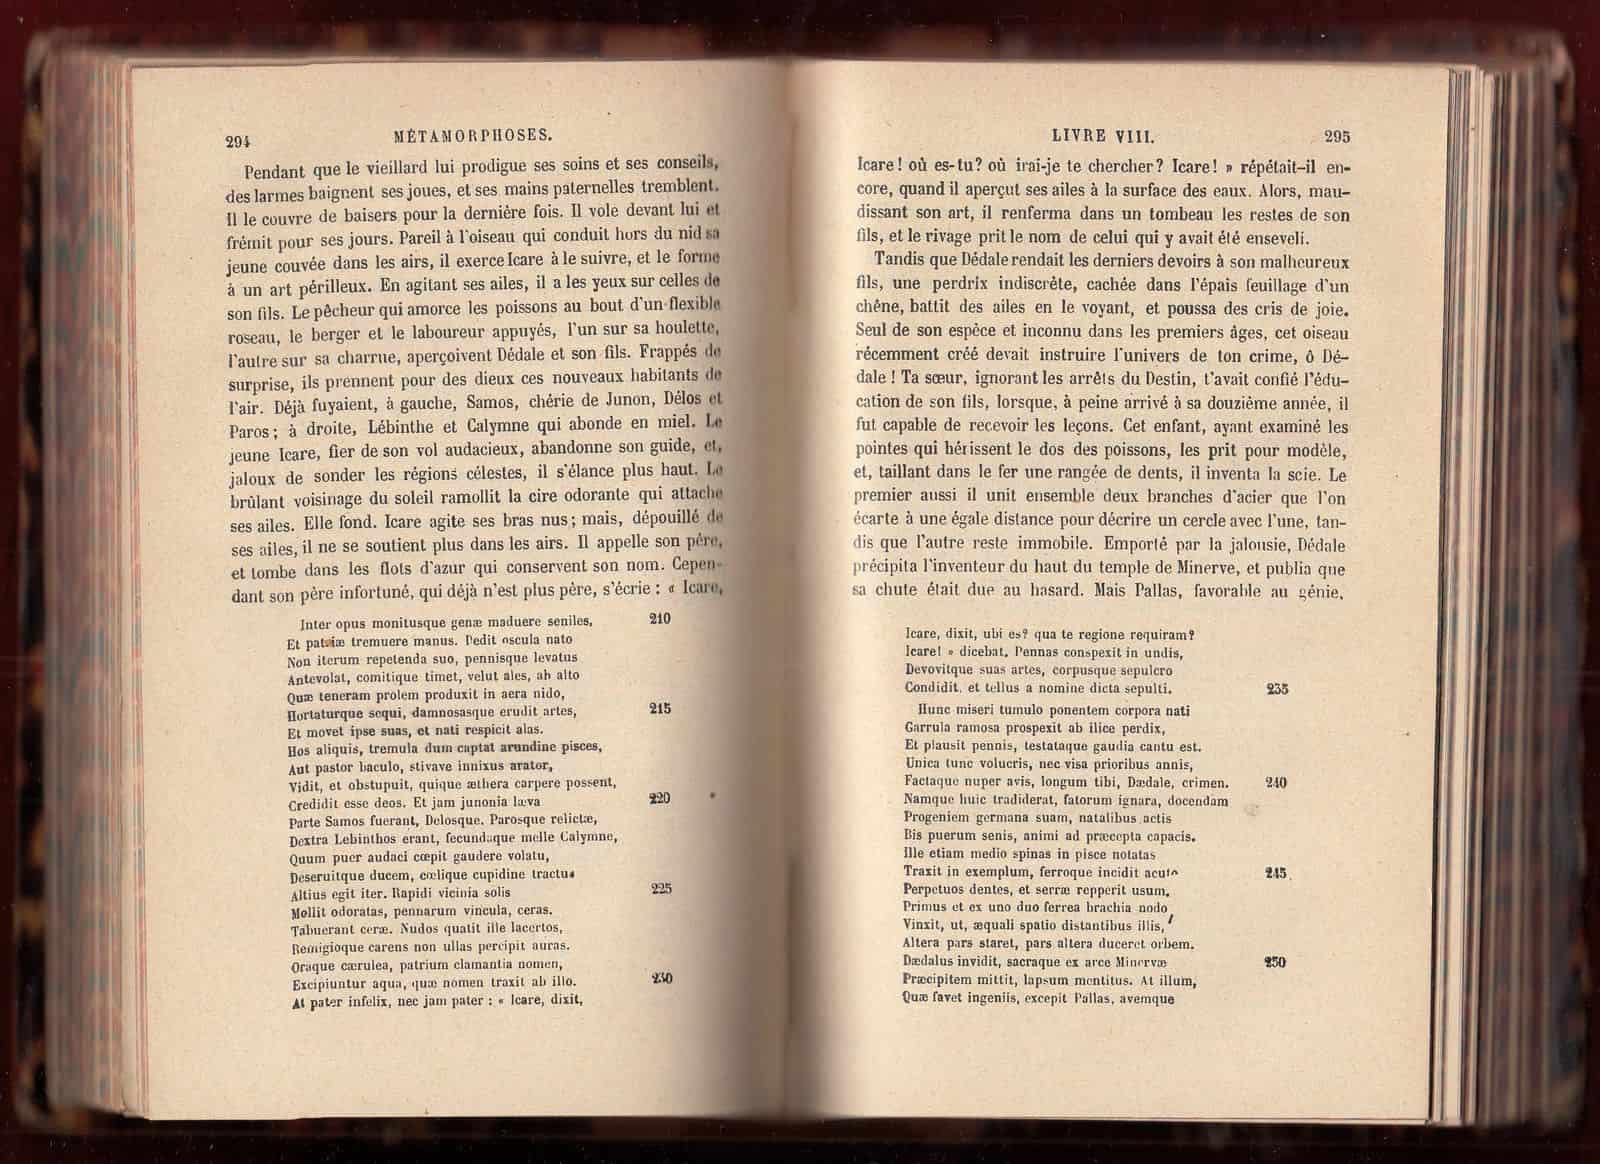 1875 Les Métamorphoses Ovid Transformations Greek Roman Mythology ...